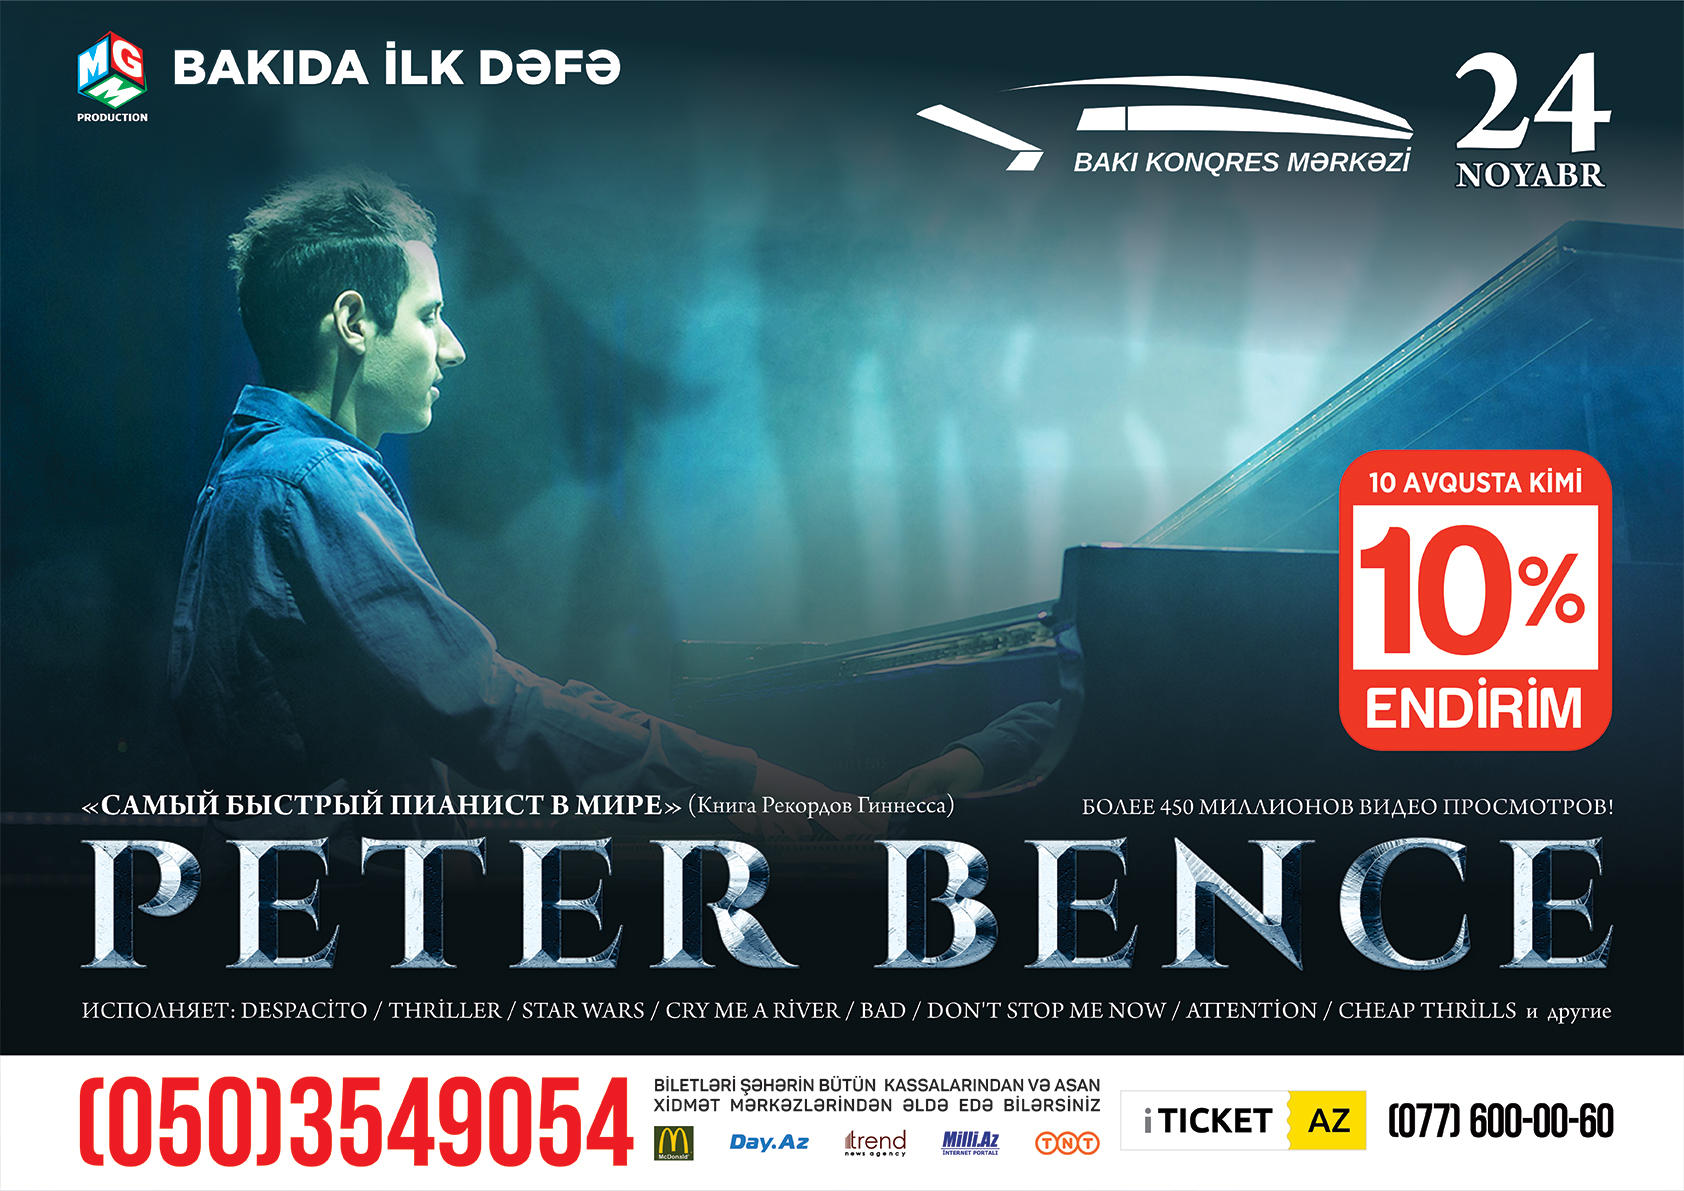 765 нот в минуту! Самый быстрый пианист в мире Петер Бенце покажет свое мастерство в Баку (ВИДЕО)